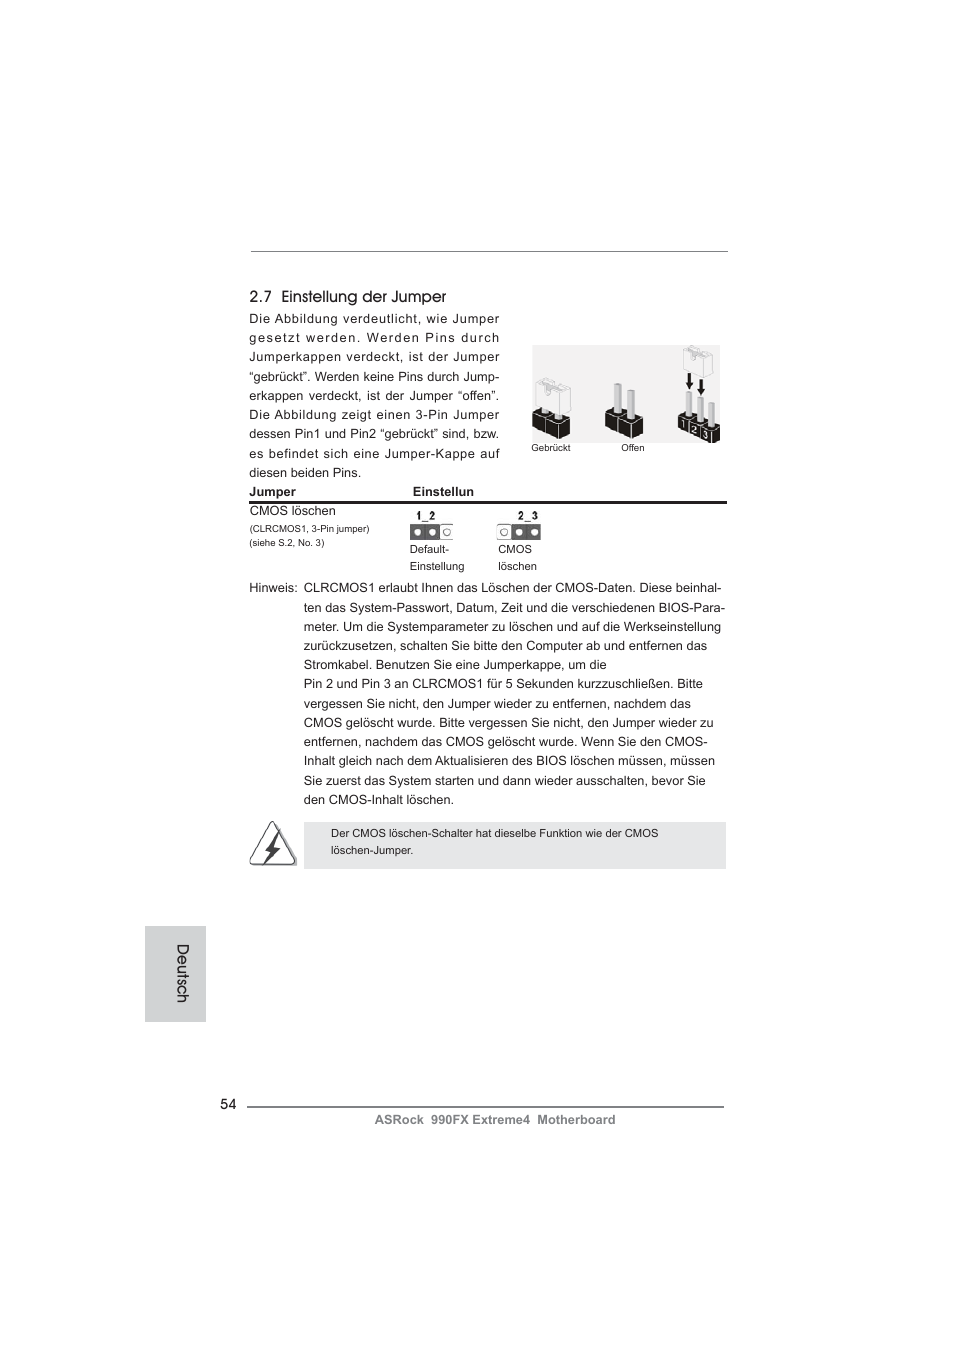 7 einstellung der jumper, Deutsch | ASRock 990FX Extreme4 User Manual |  Page 54 / 281 | Original mode